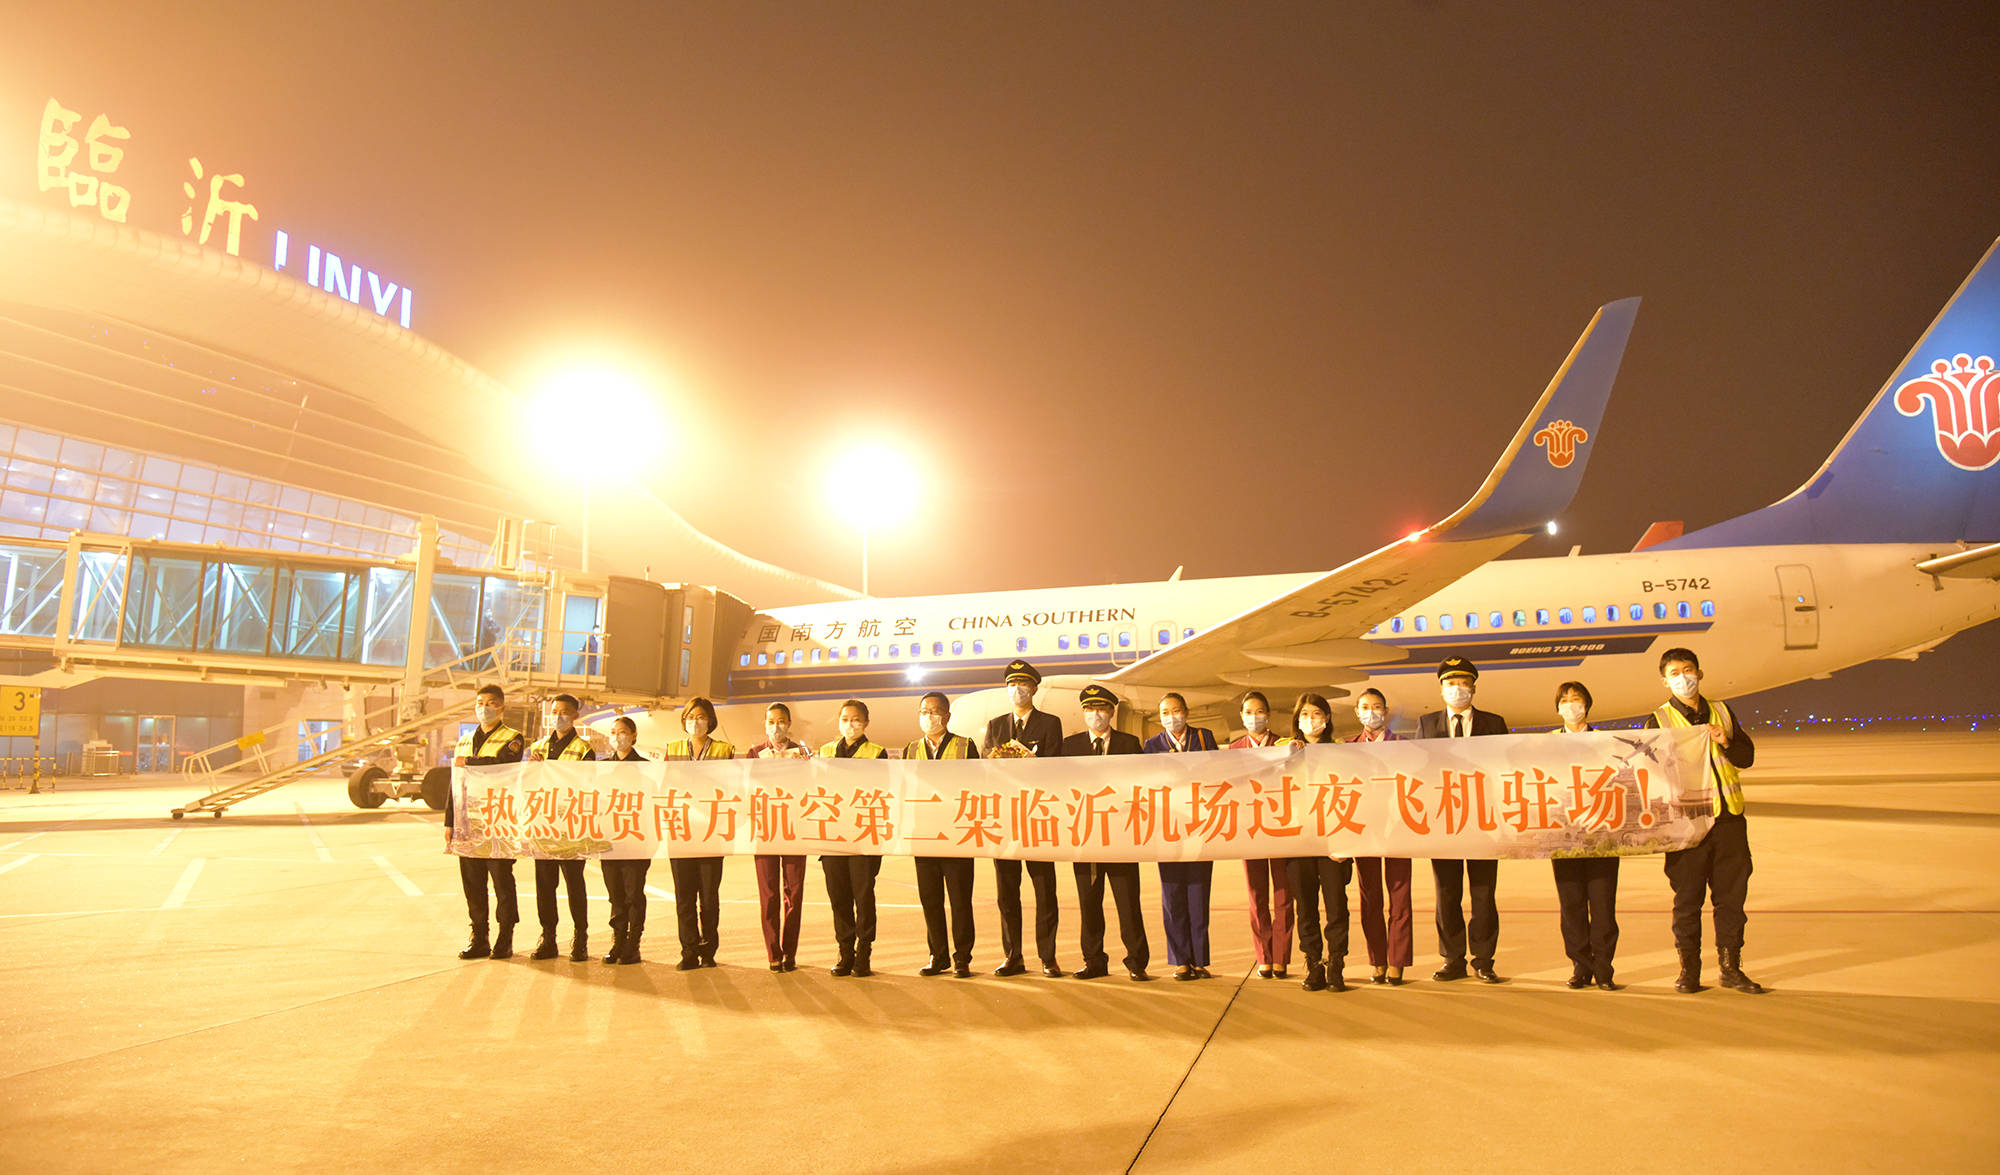 加密和优化多条航线,尤其是与中国南方航空公司合作引进第二架驻场